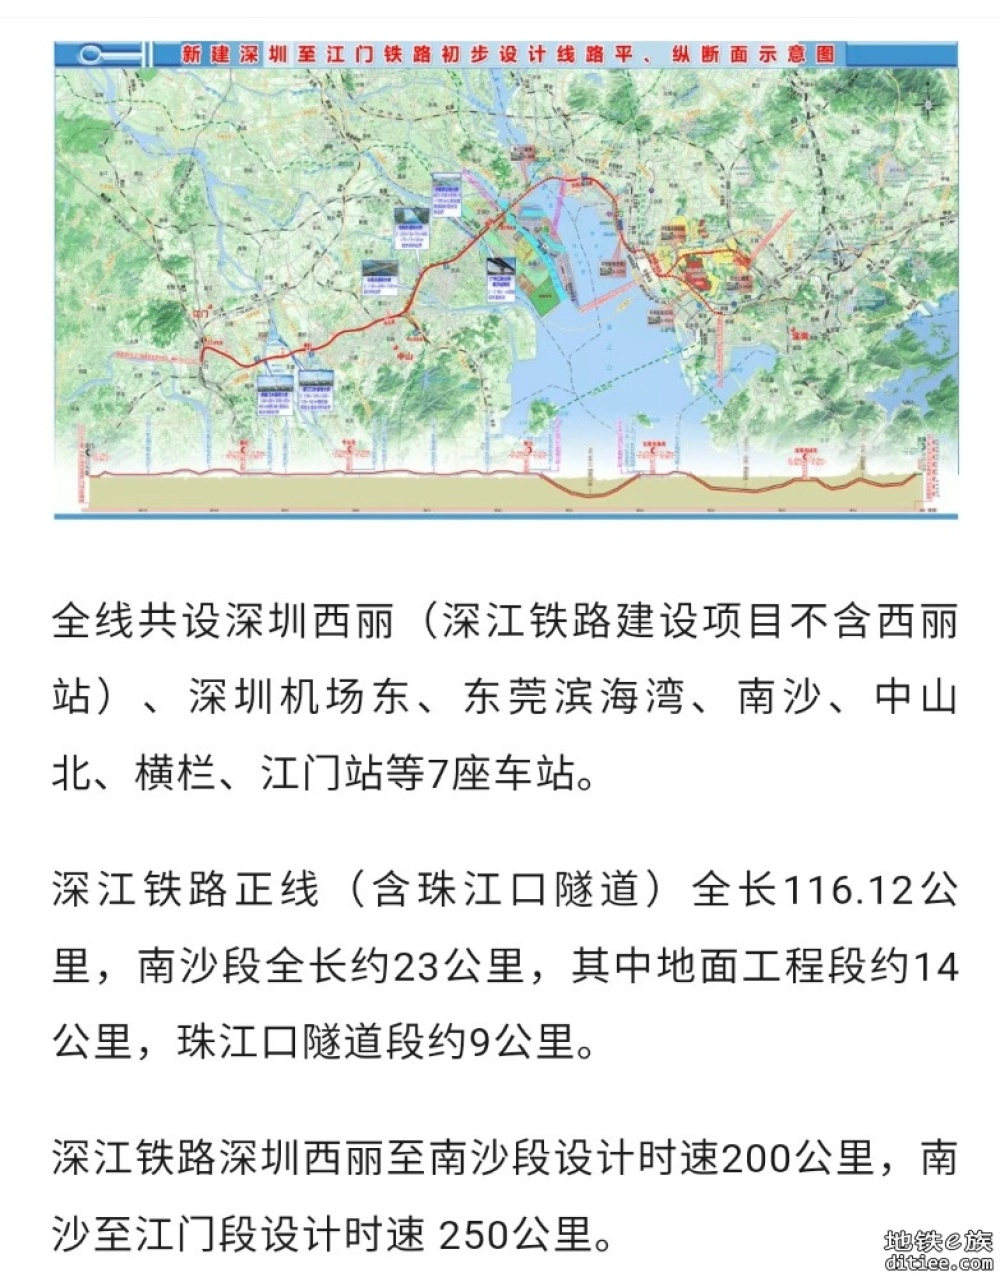 深江铁路珠江口隧道工程突破关键节点